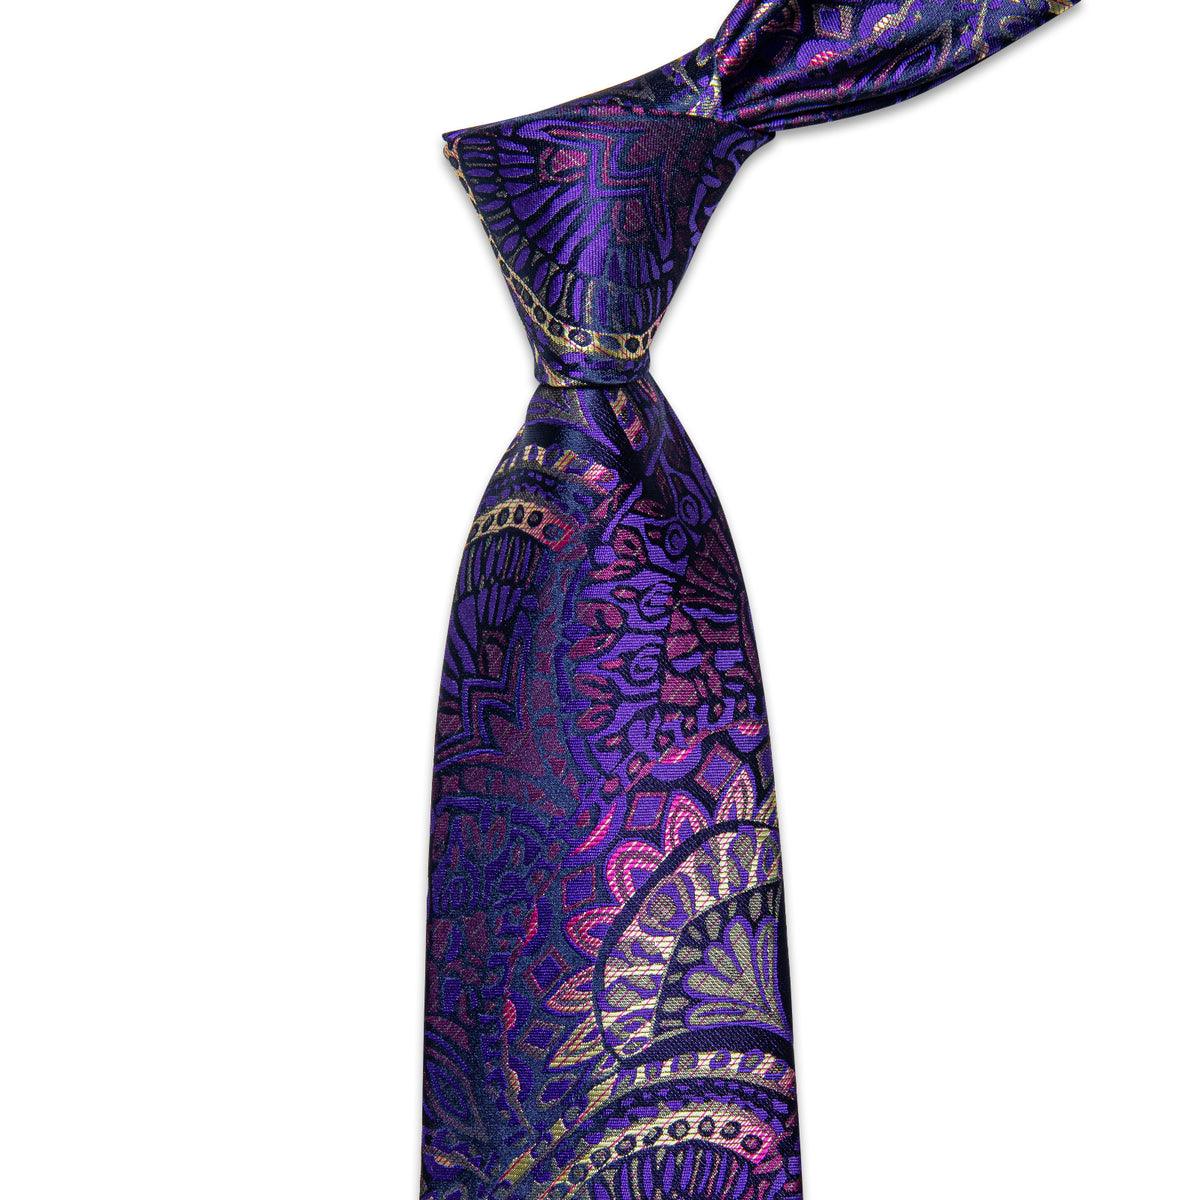 Purple Pink Yellow Floral Silk Tie Pocket Square Cufflink Set - STYLETIE